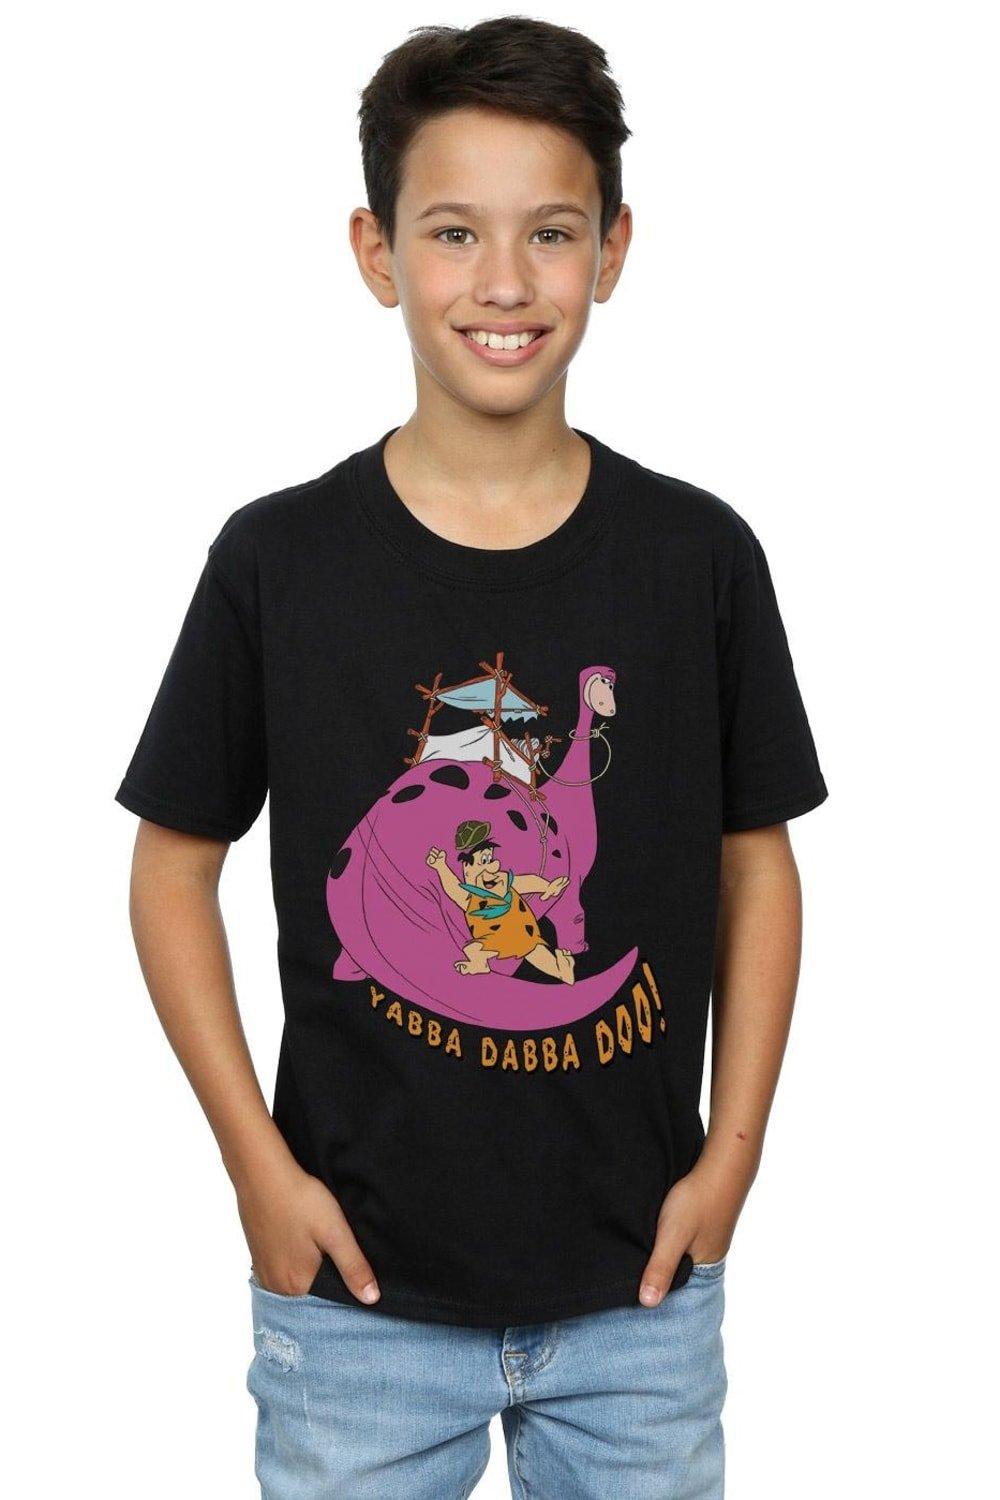 Yabba Dabba Doo T-Shirt